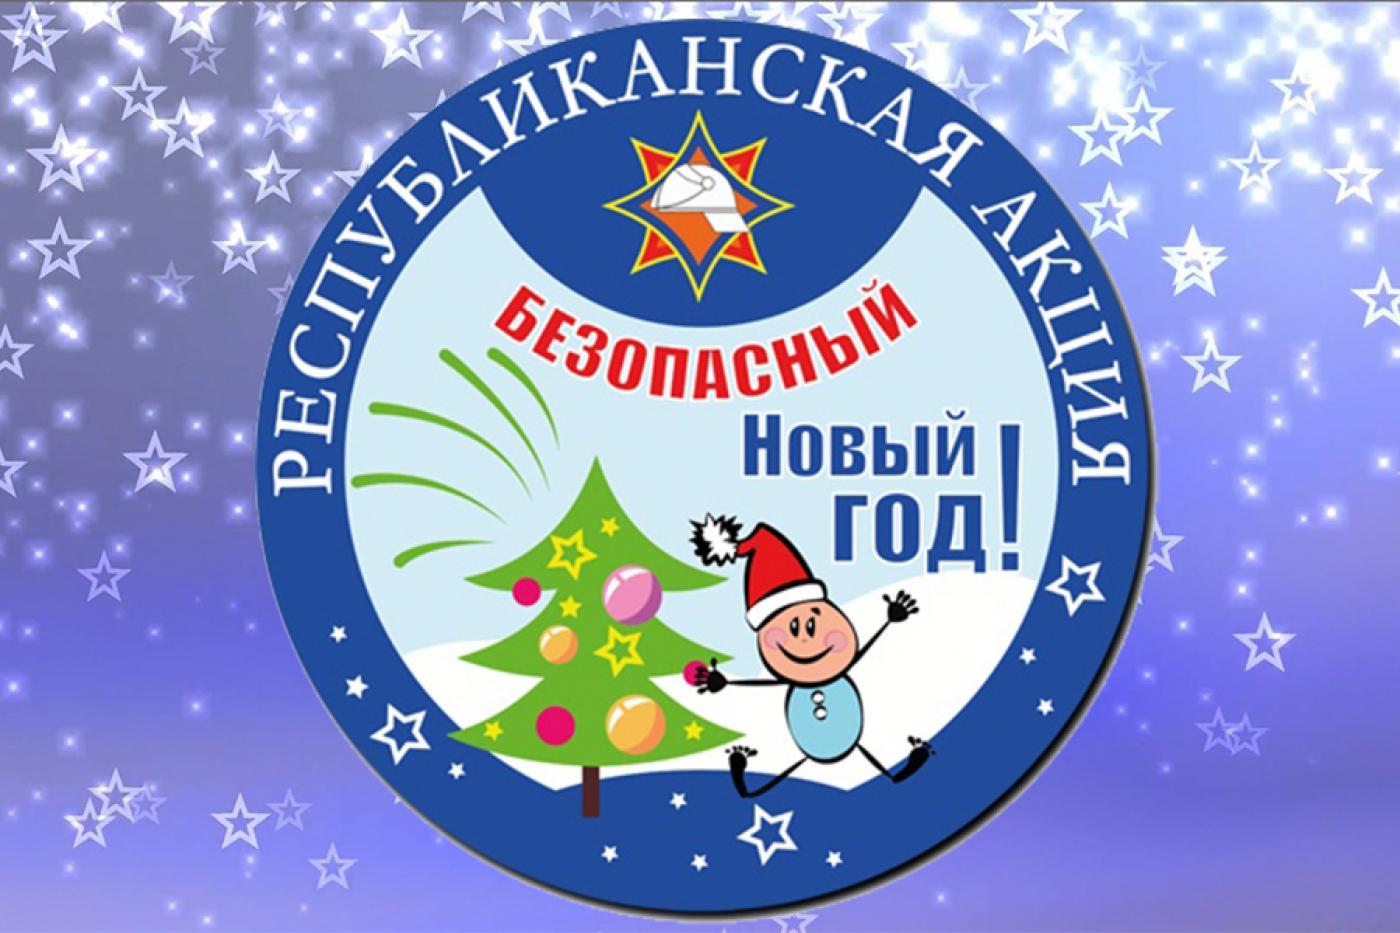 В Наровлянском районе проходит республиканская акция «Безопасный Новый год!»